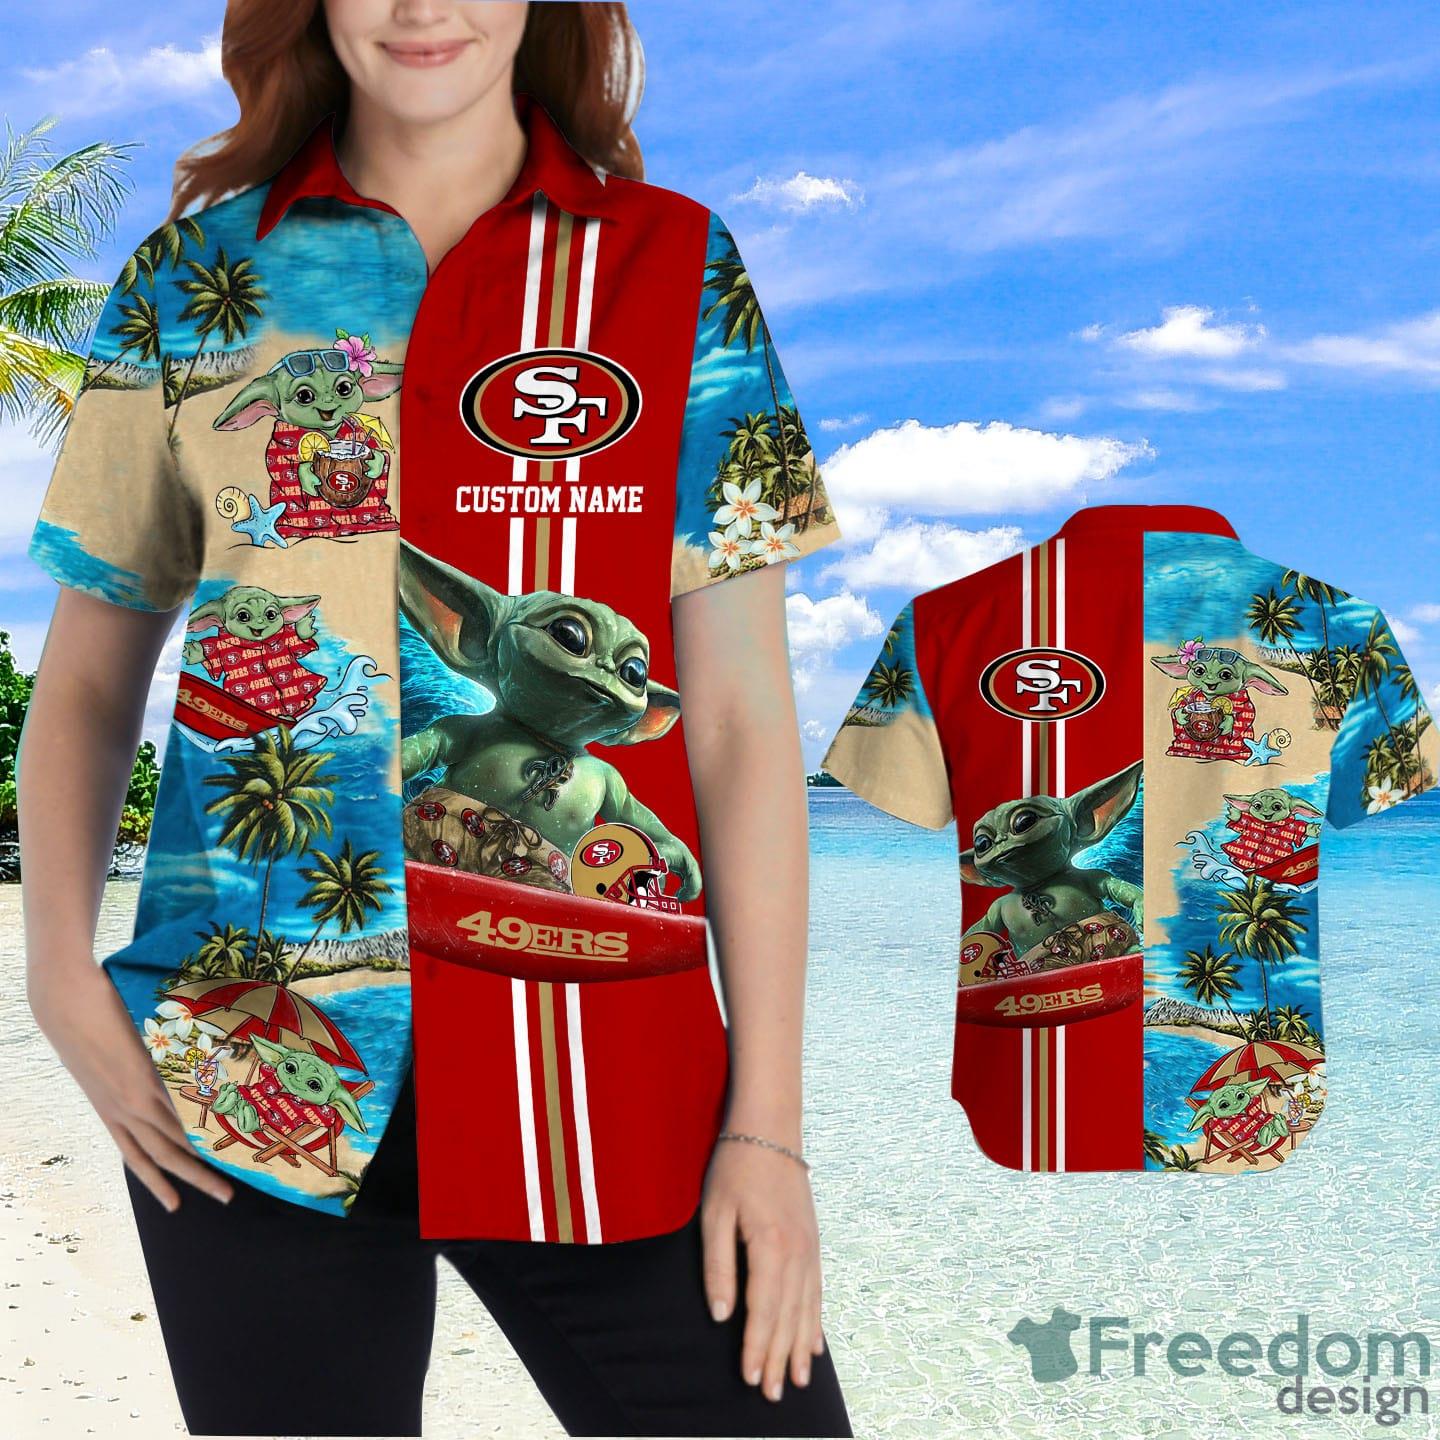 49Ers Nfl Baby Yoda Star Wars Hawaiian Shirt - Best Seller Shirts Design In  Usa